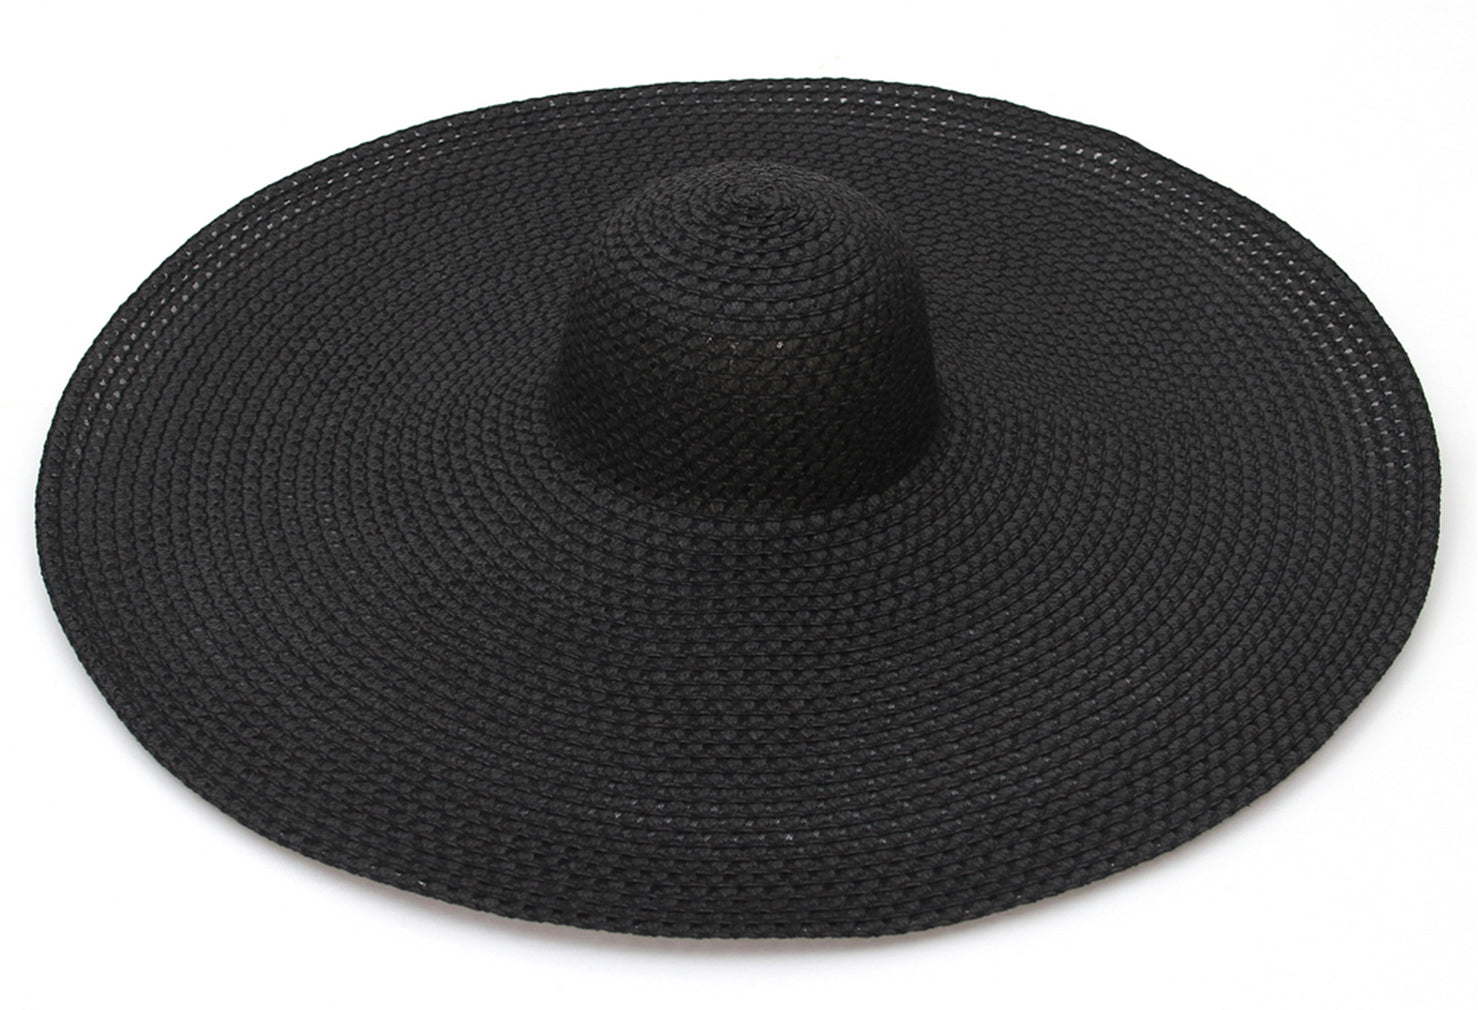 GEMVIE Women's Large Brim Straw Sun Hat Oversized Floppy Brim Hollow Out Sun Hat Packable Beach Straw Hat